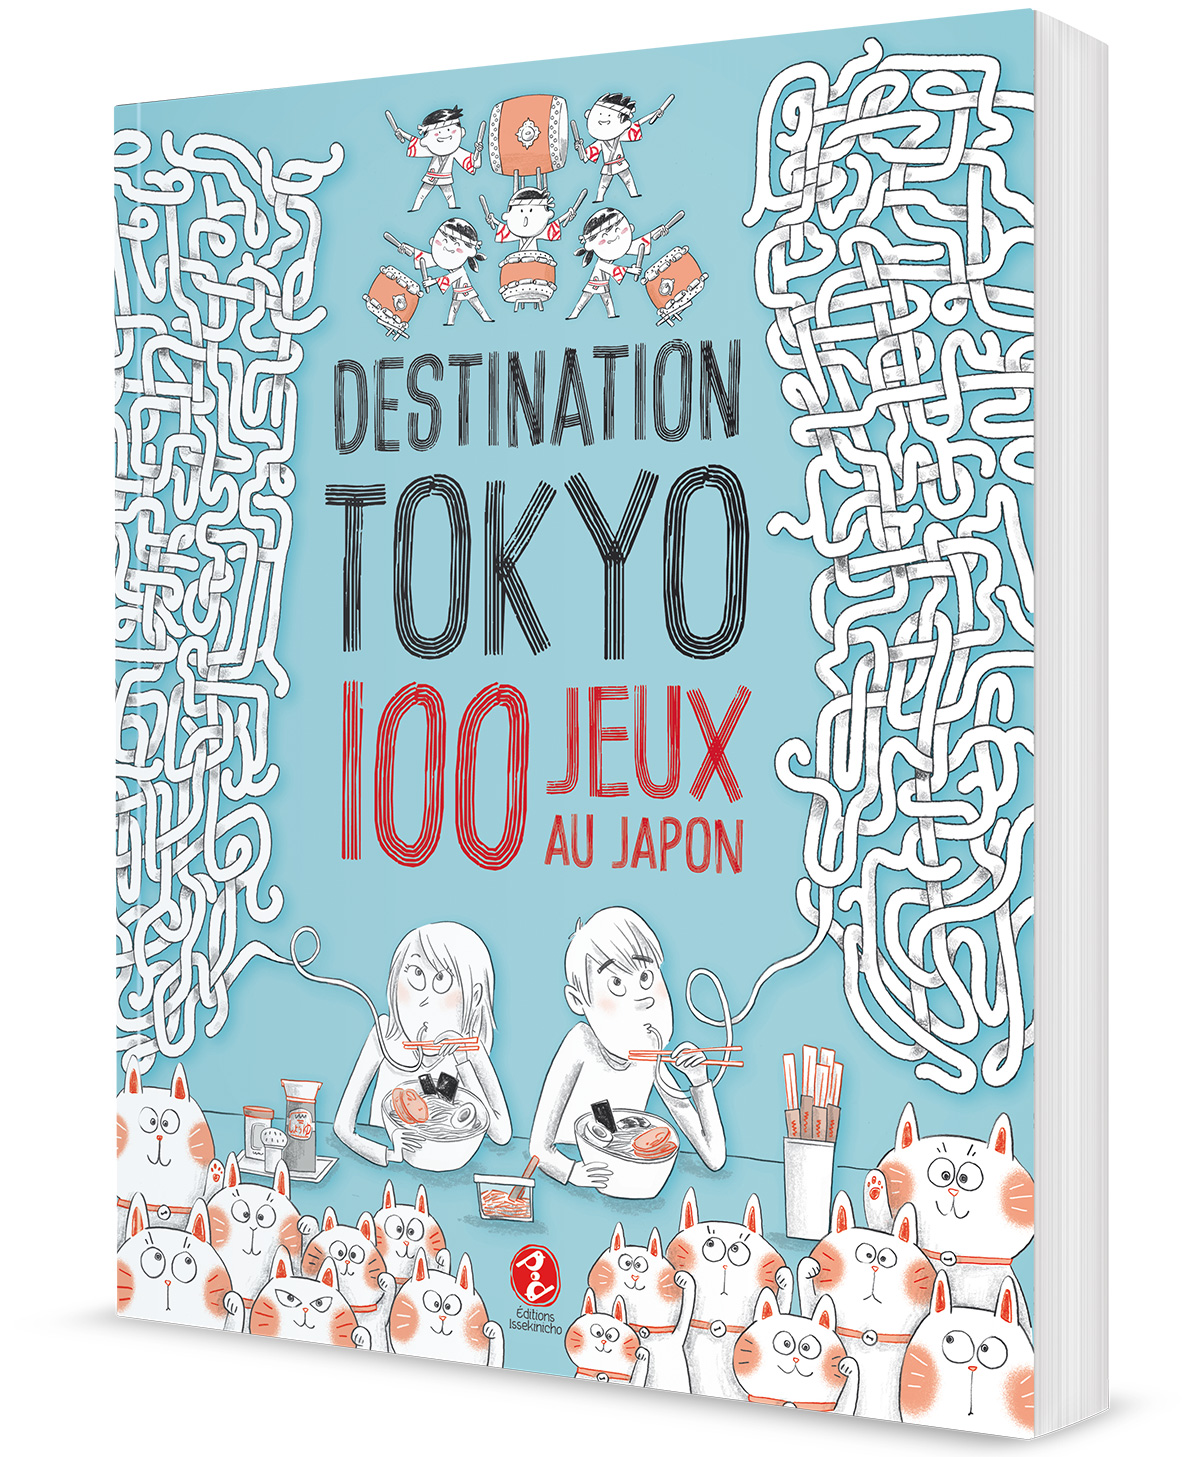 Destination Tokyo - 100 jeux sur le Japon - couverture du livre